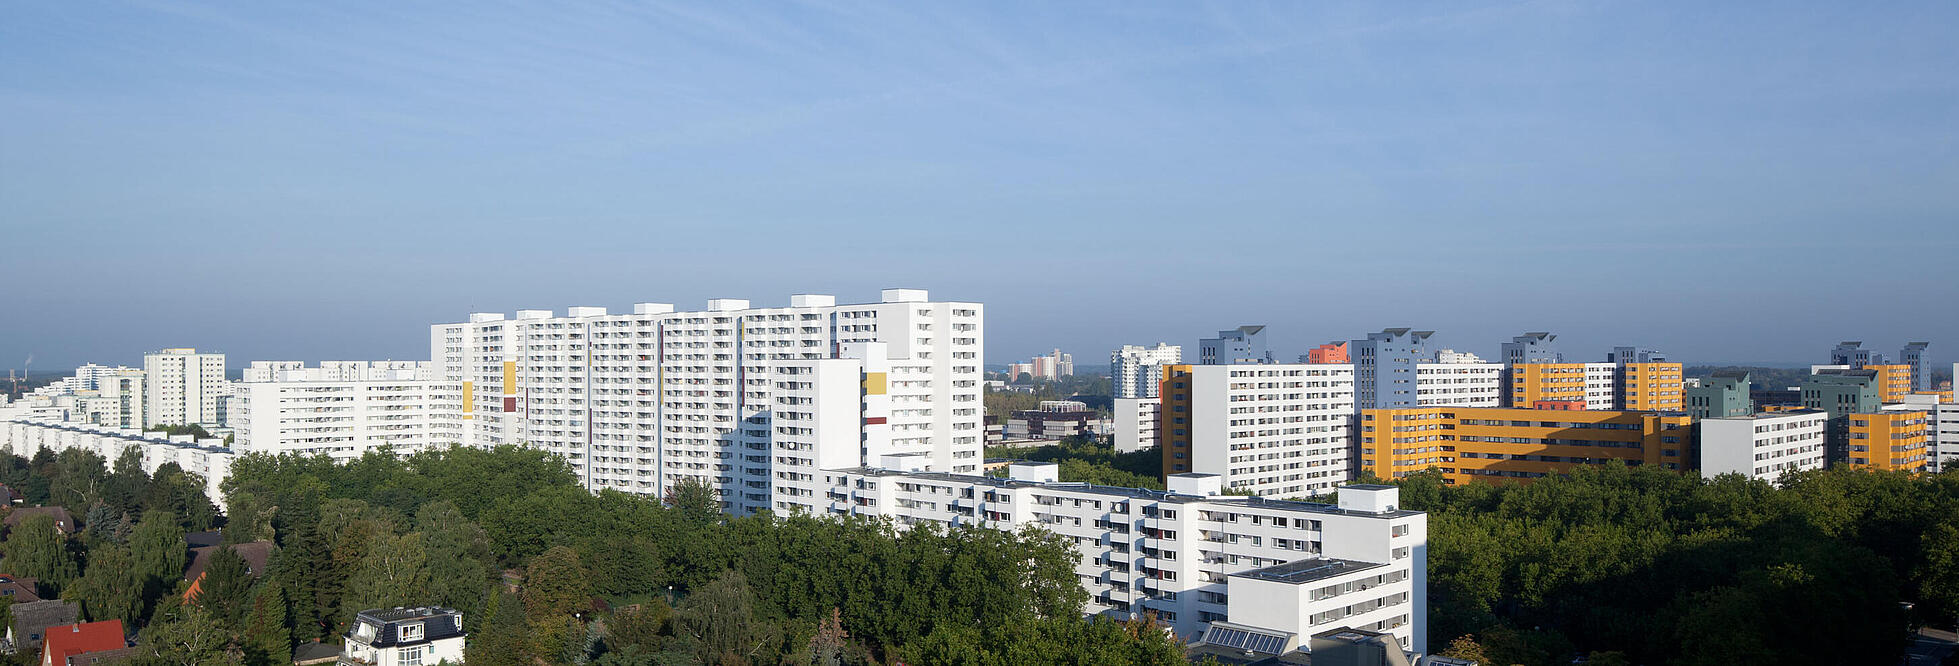 Panoramabild zeigt Hochhäuser im Märkischen Viertel